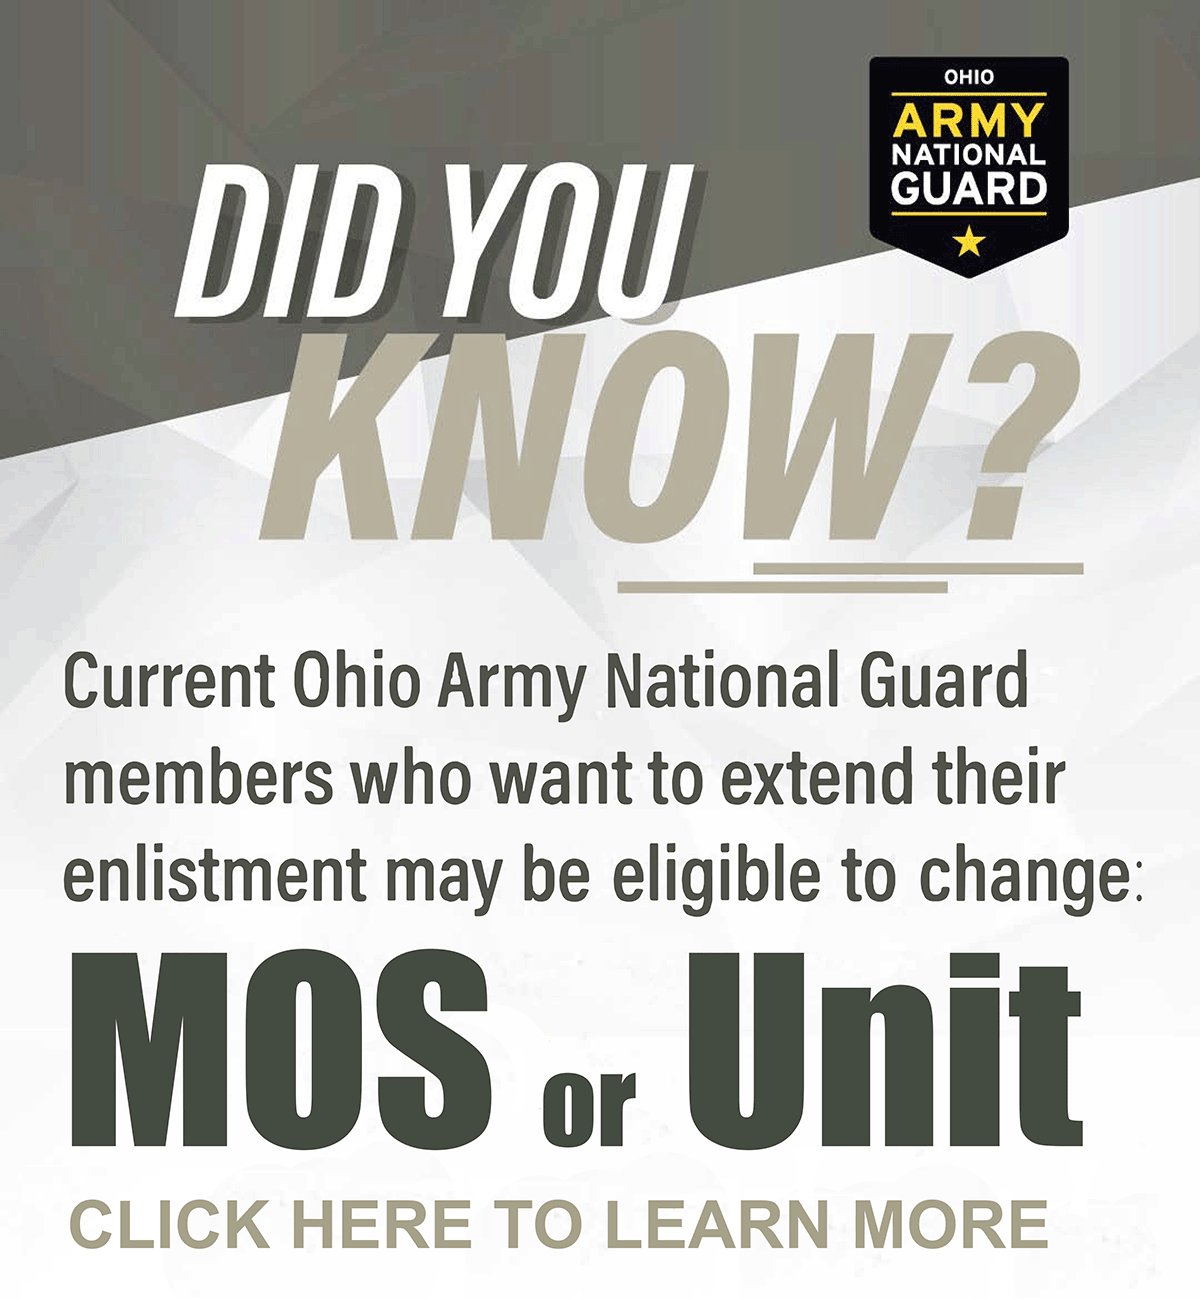 MOS - Unit changes ad